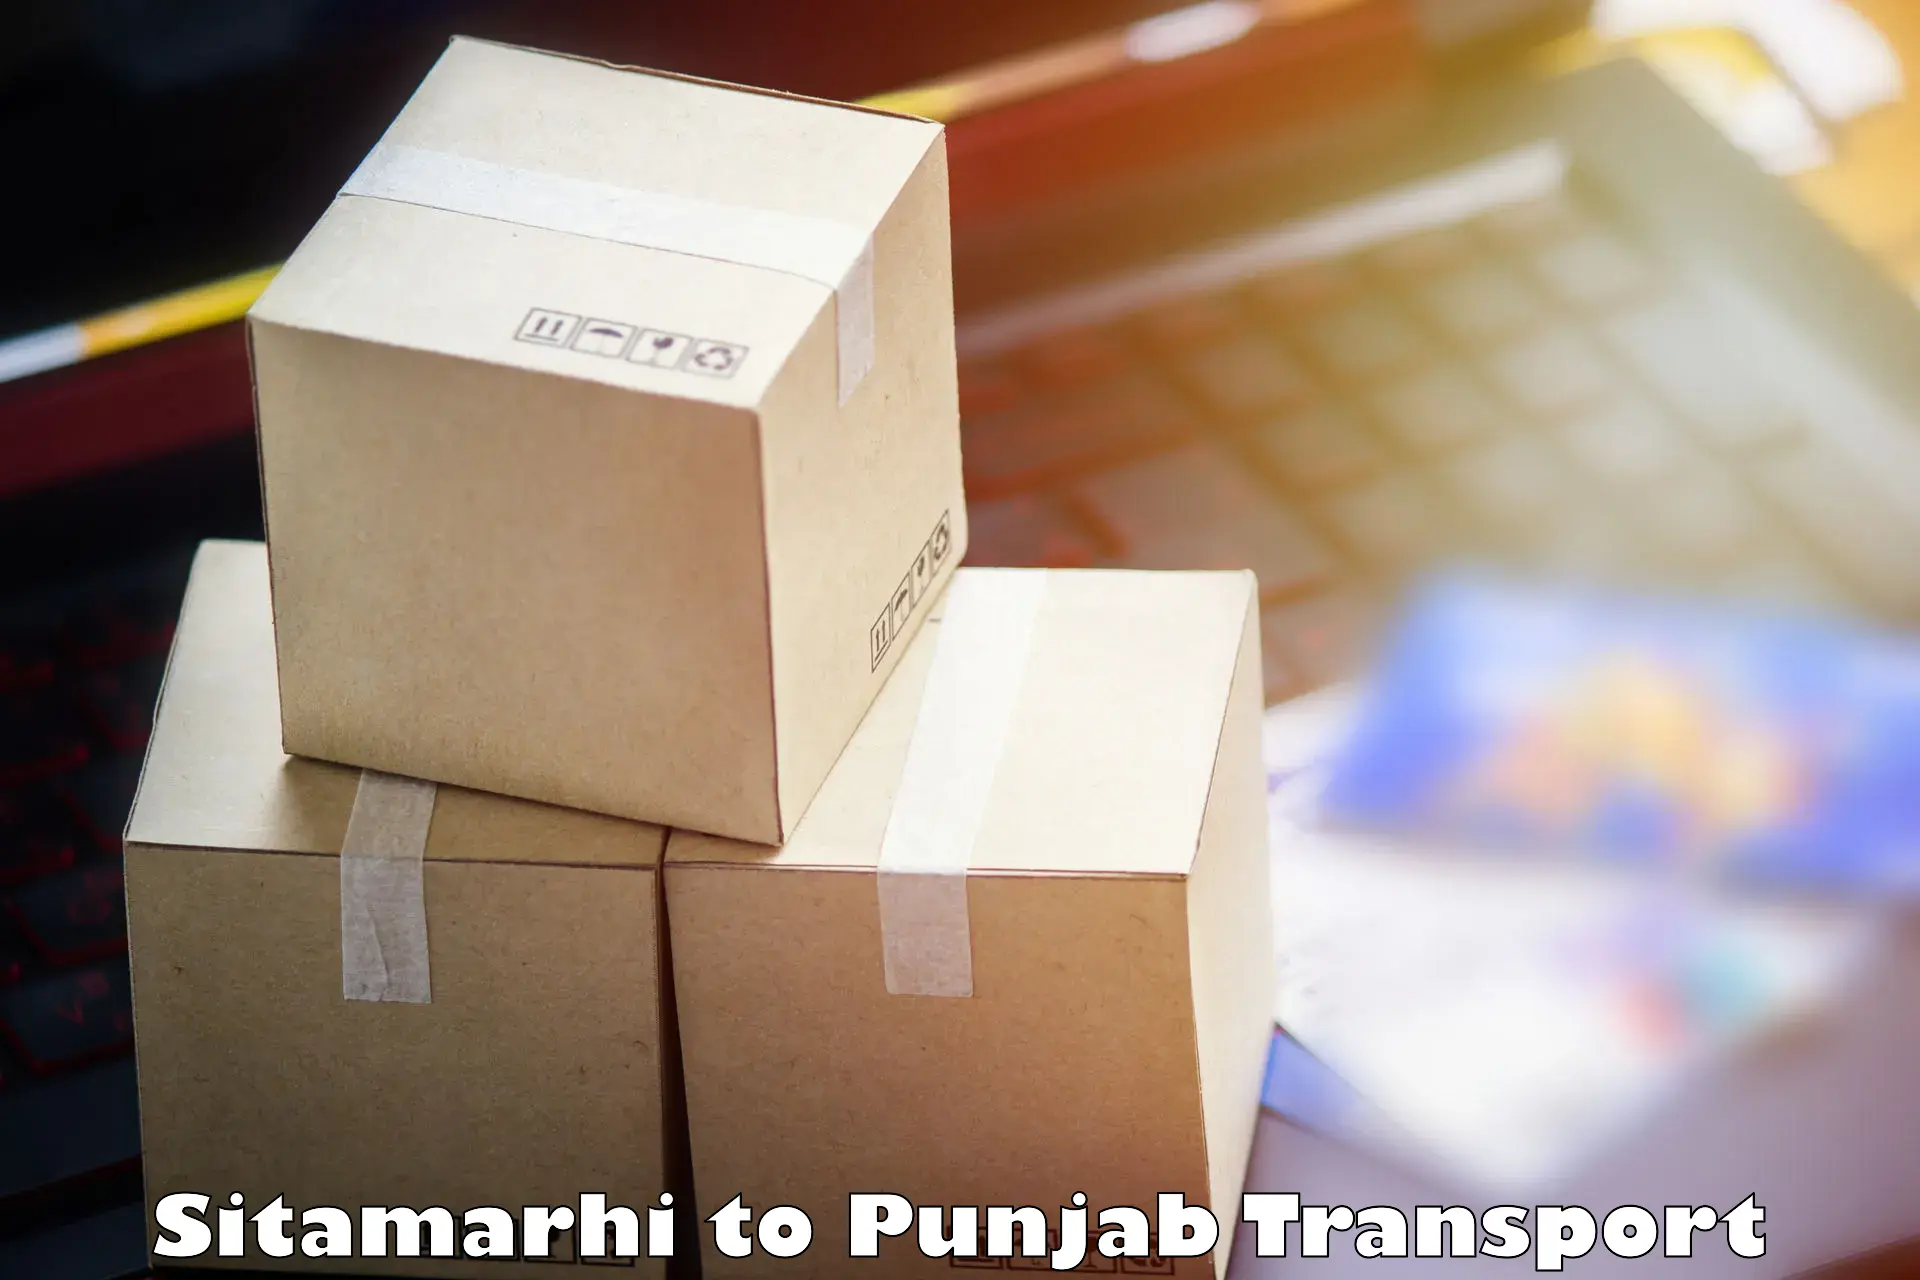 Goods delivery service Sitamarhi to Garhshankar